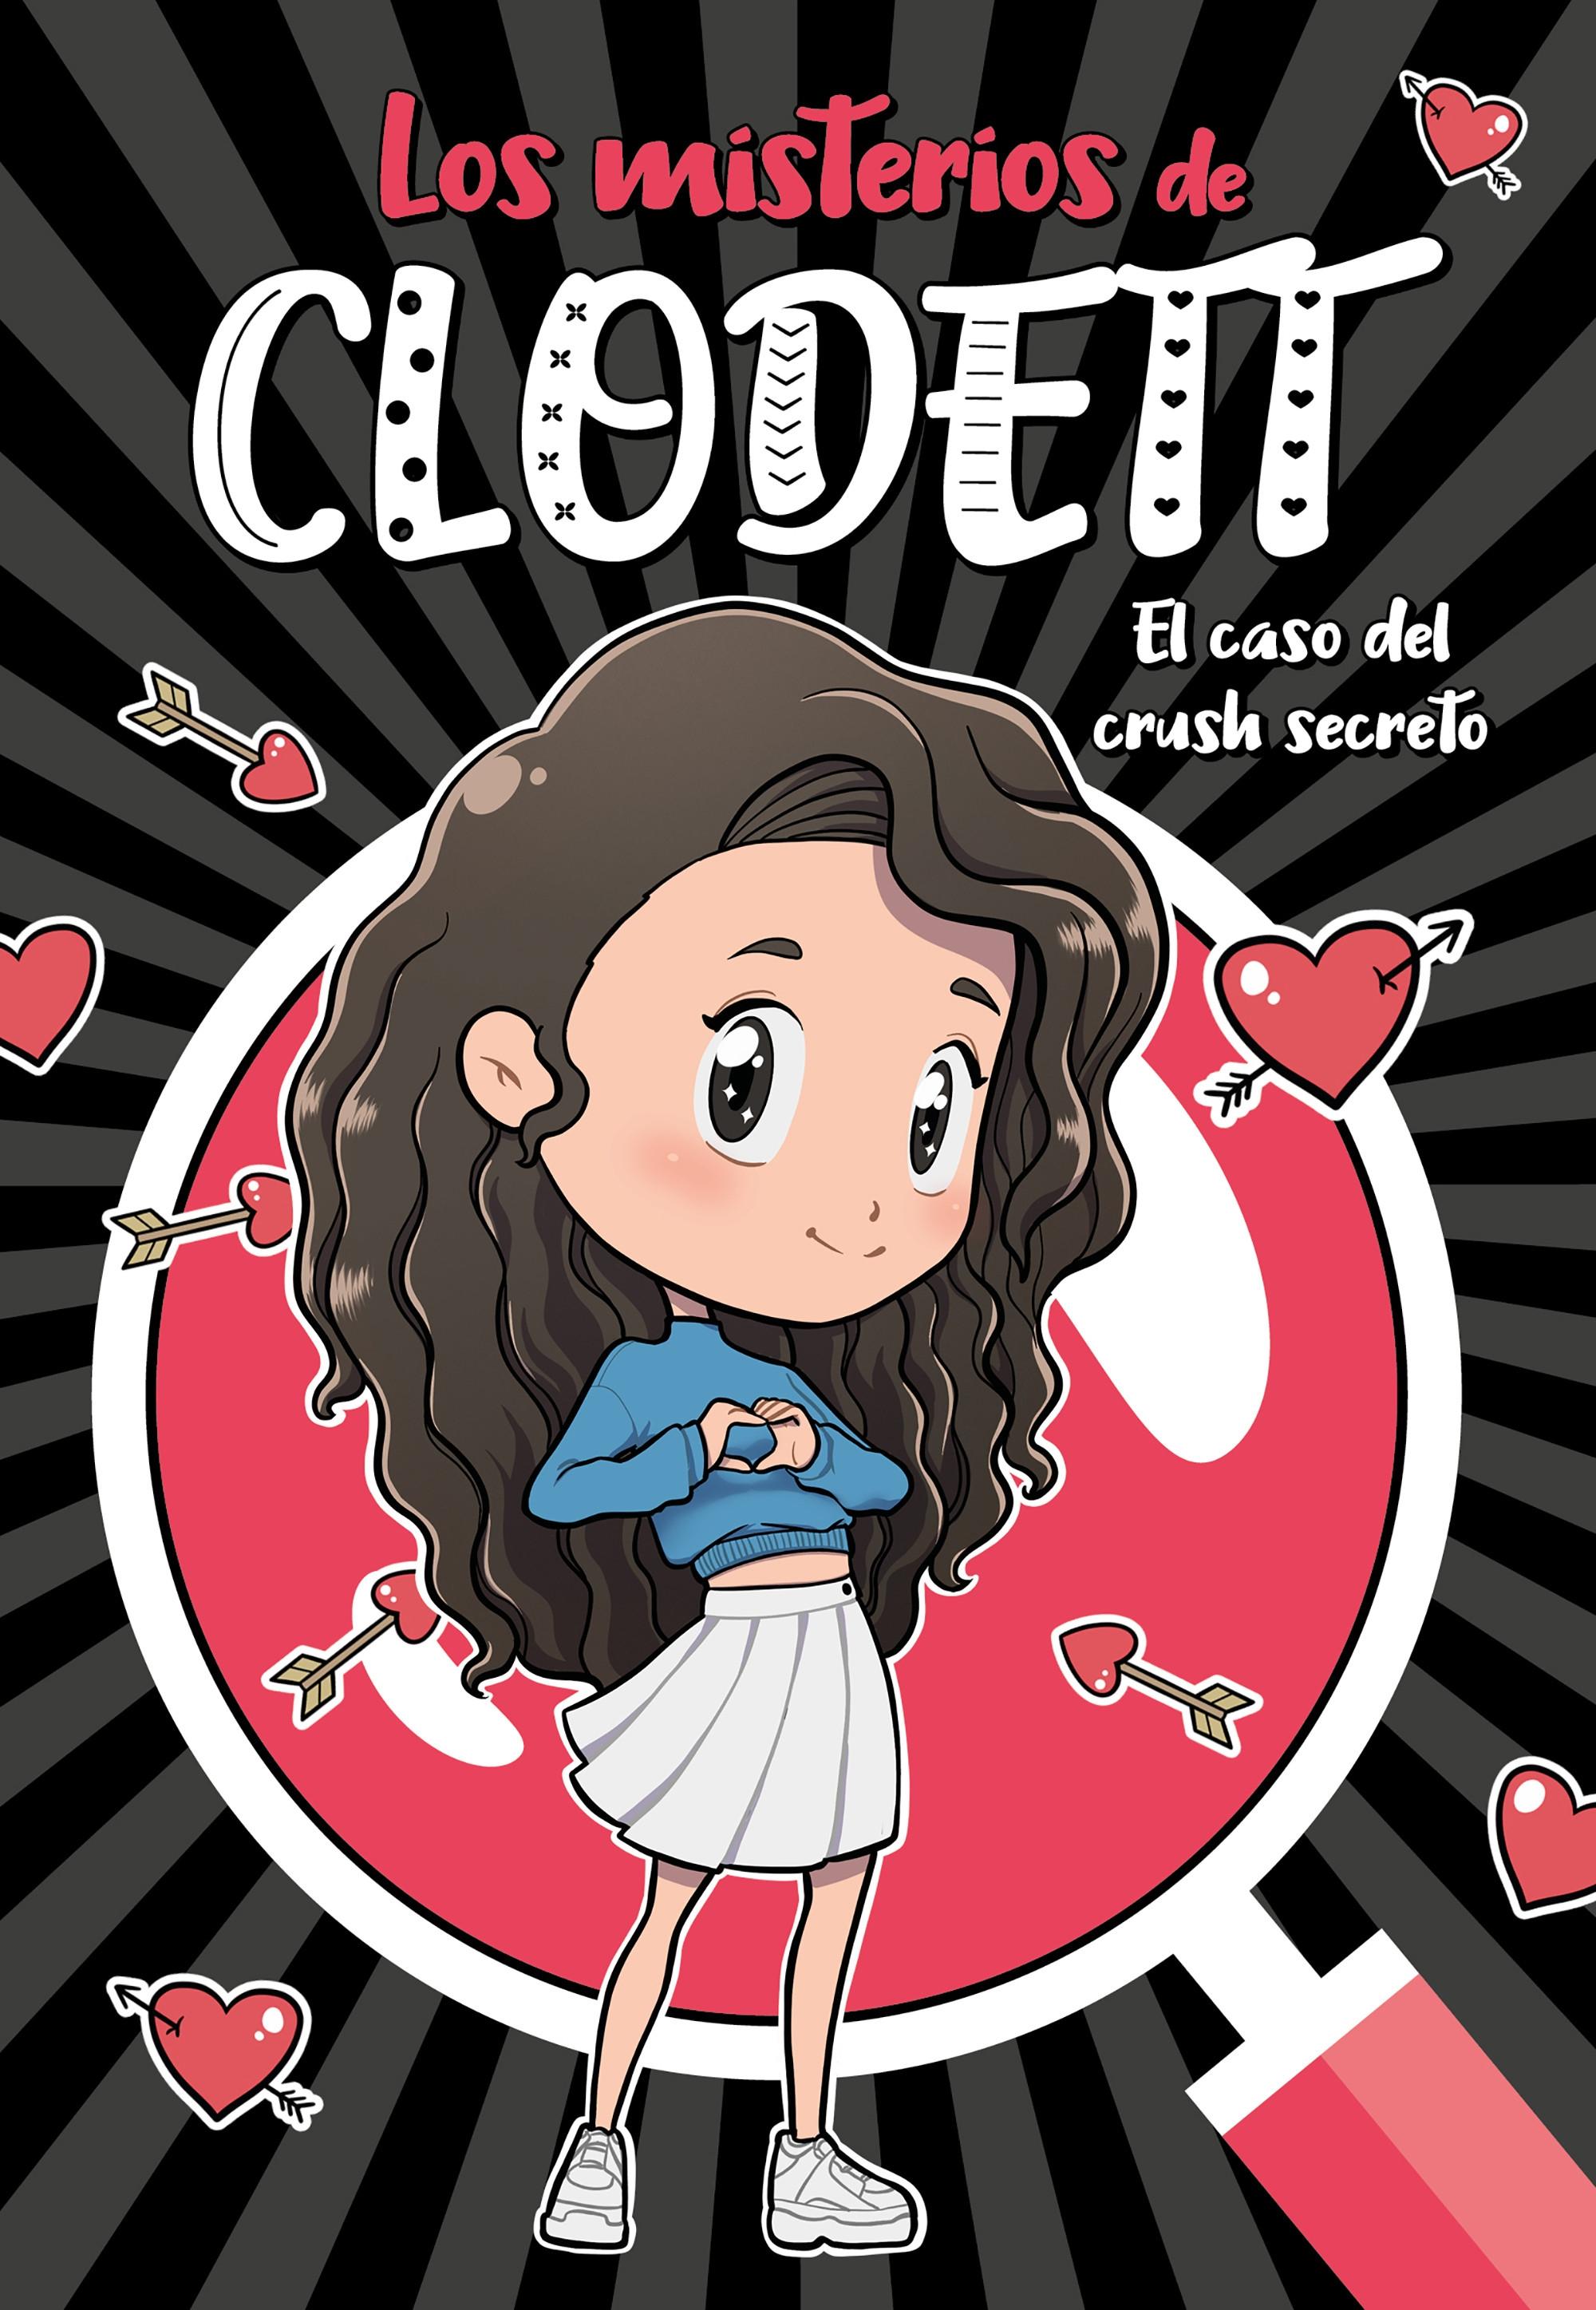 Los misterios de Clodett - 2: El caso del crush secreto